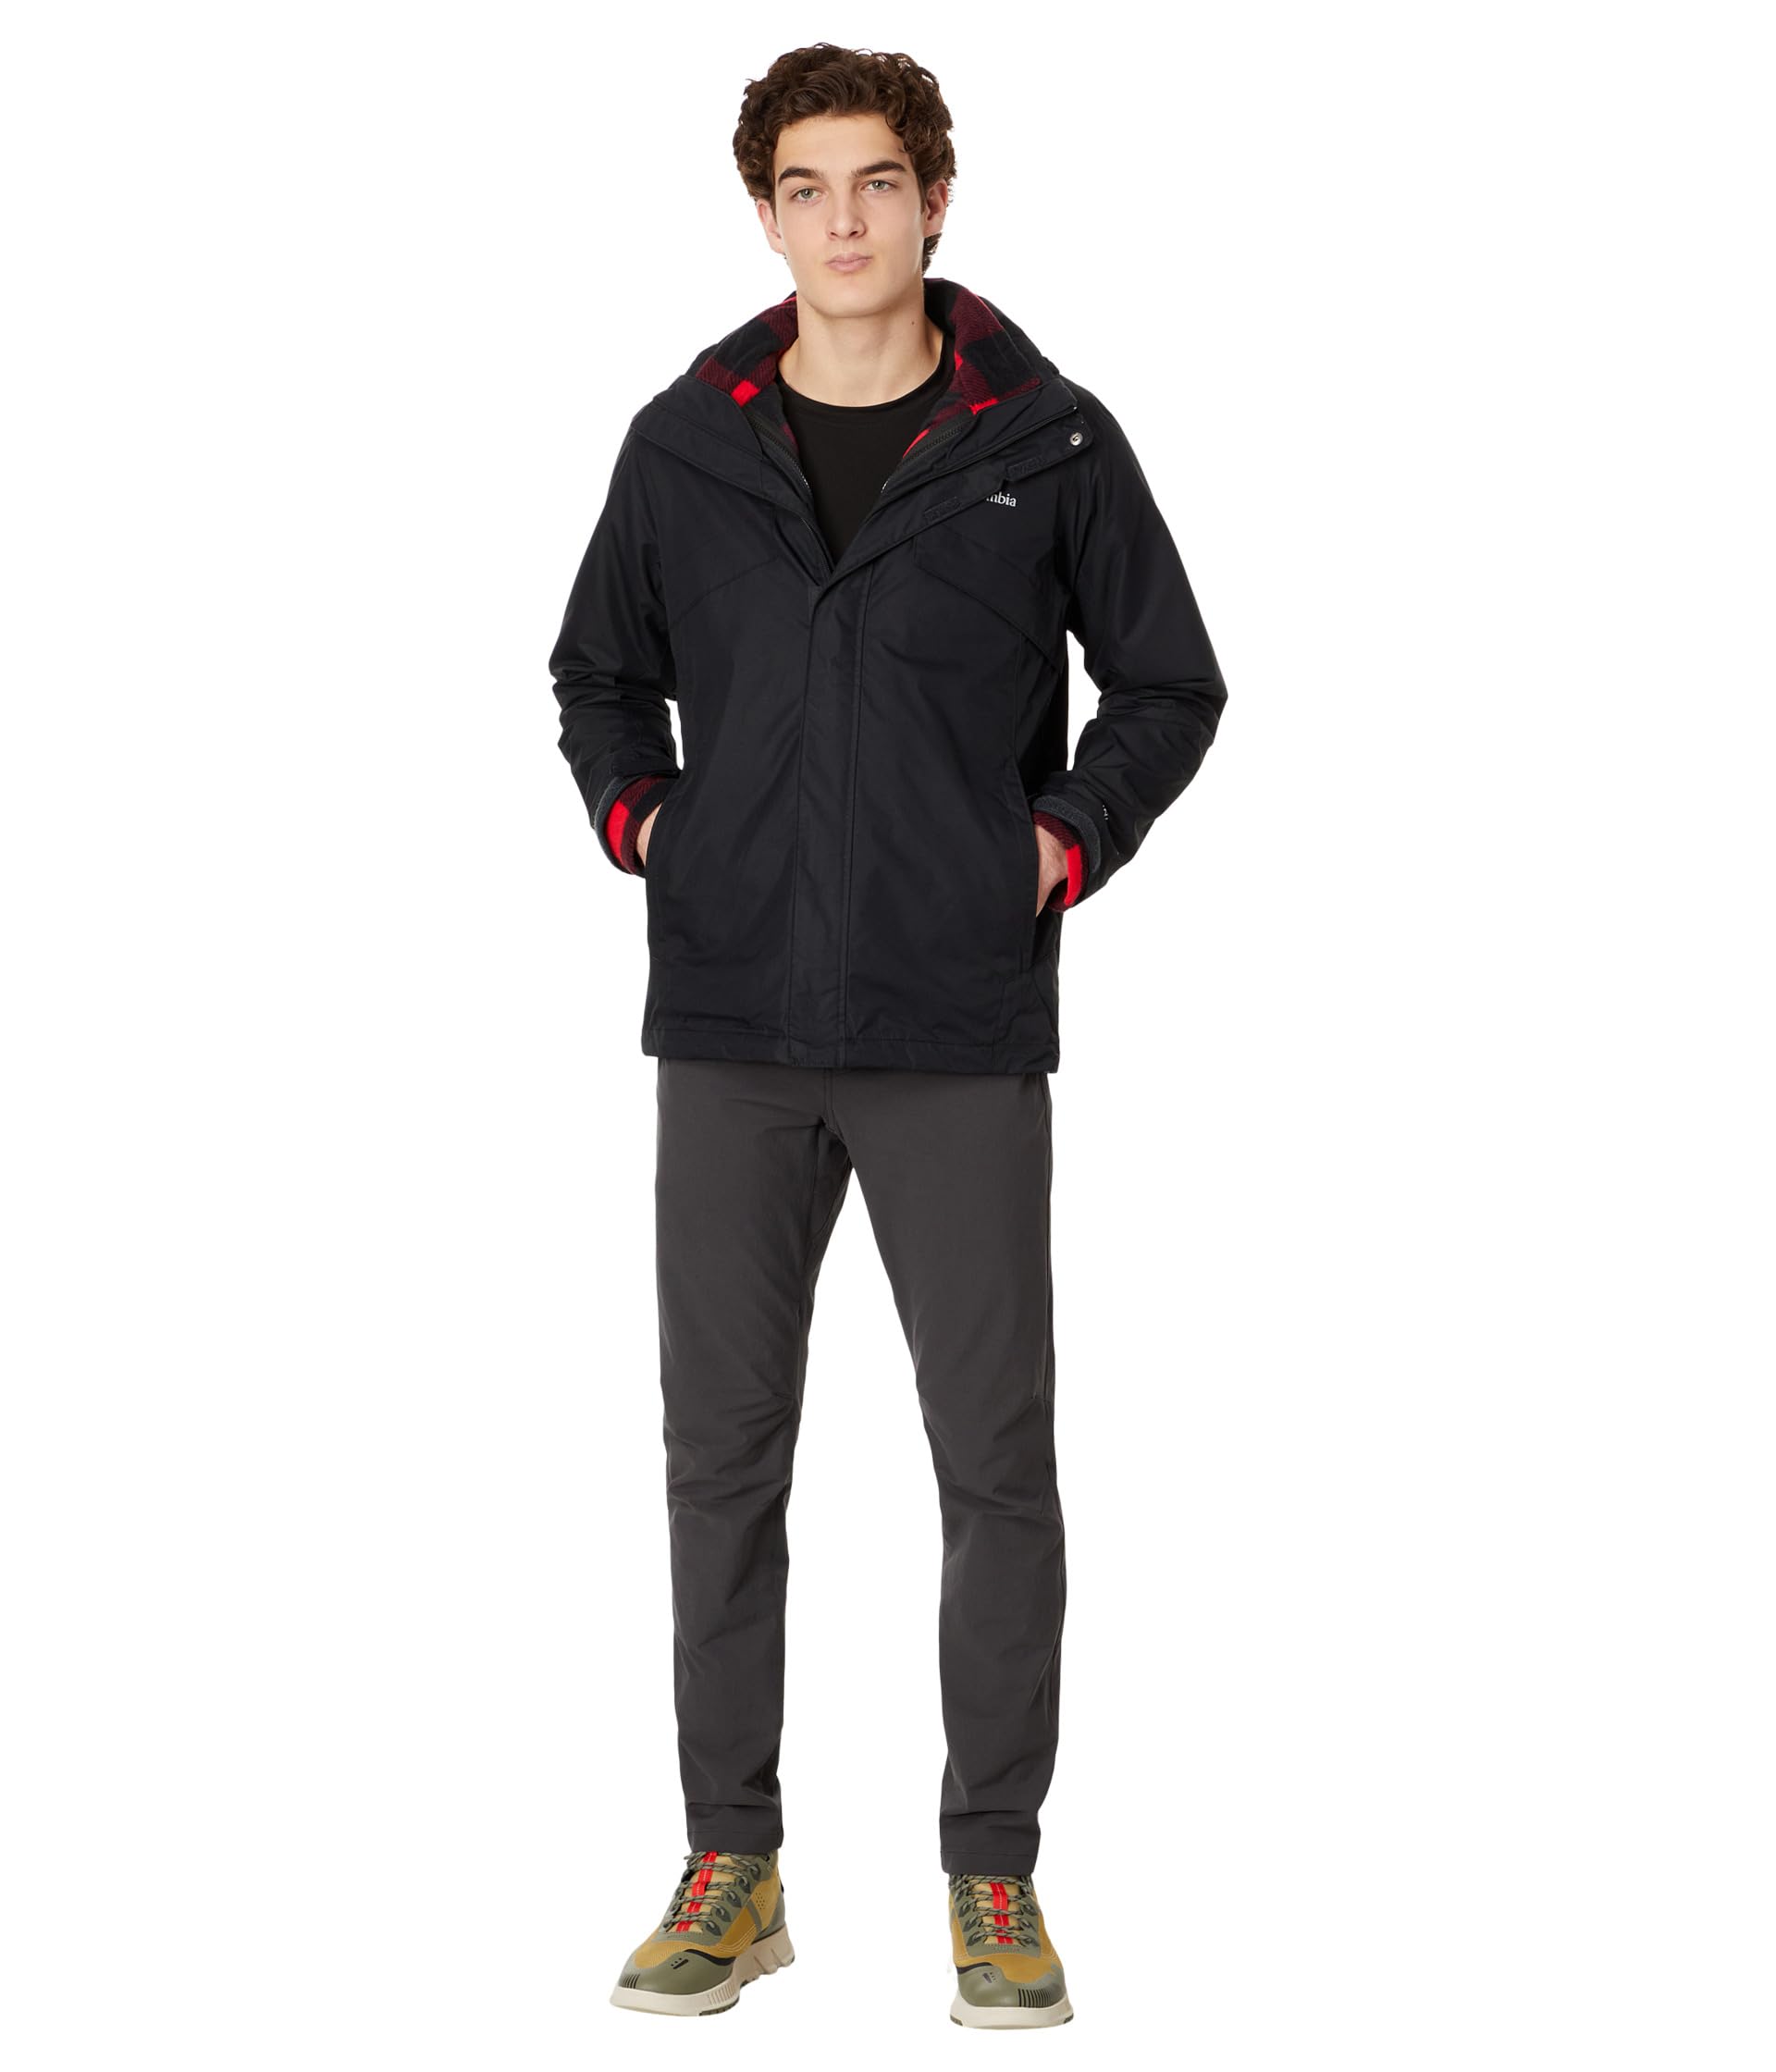 Мужская куртка для горнолыжного спорта Columbia Bugaboo™ II с флисовой подкладкой Columbia